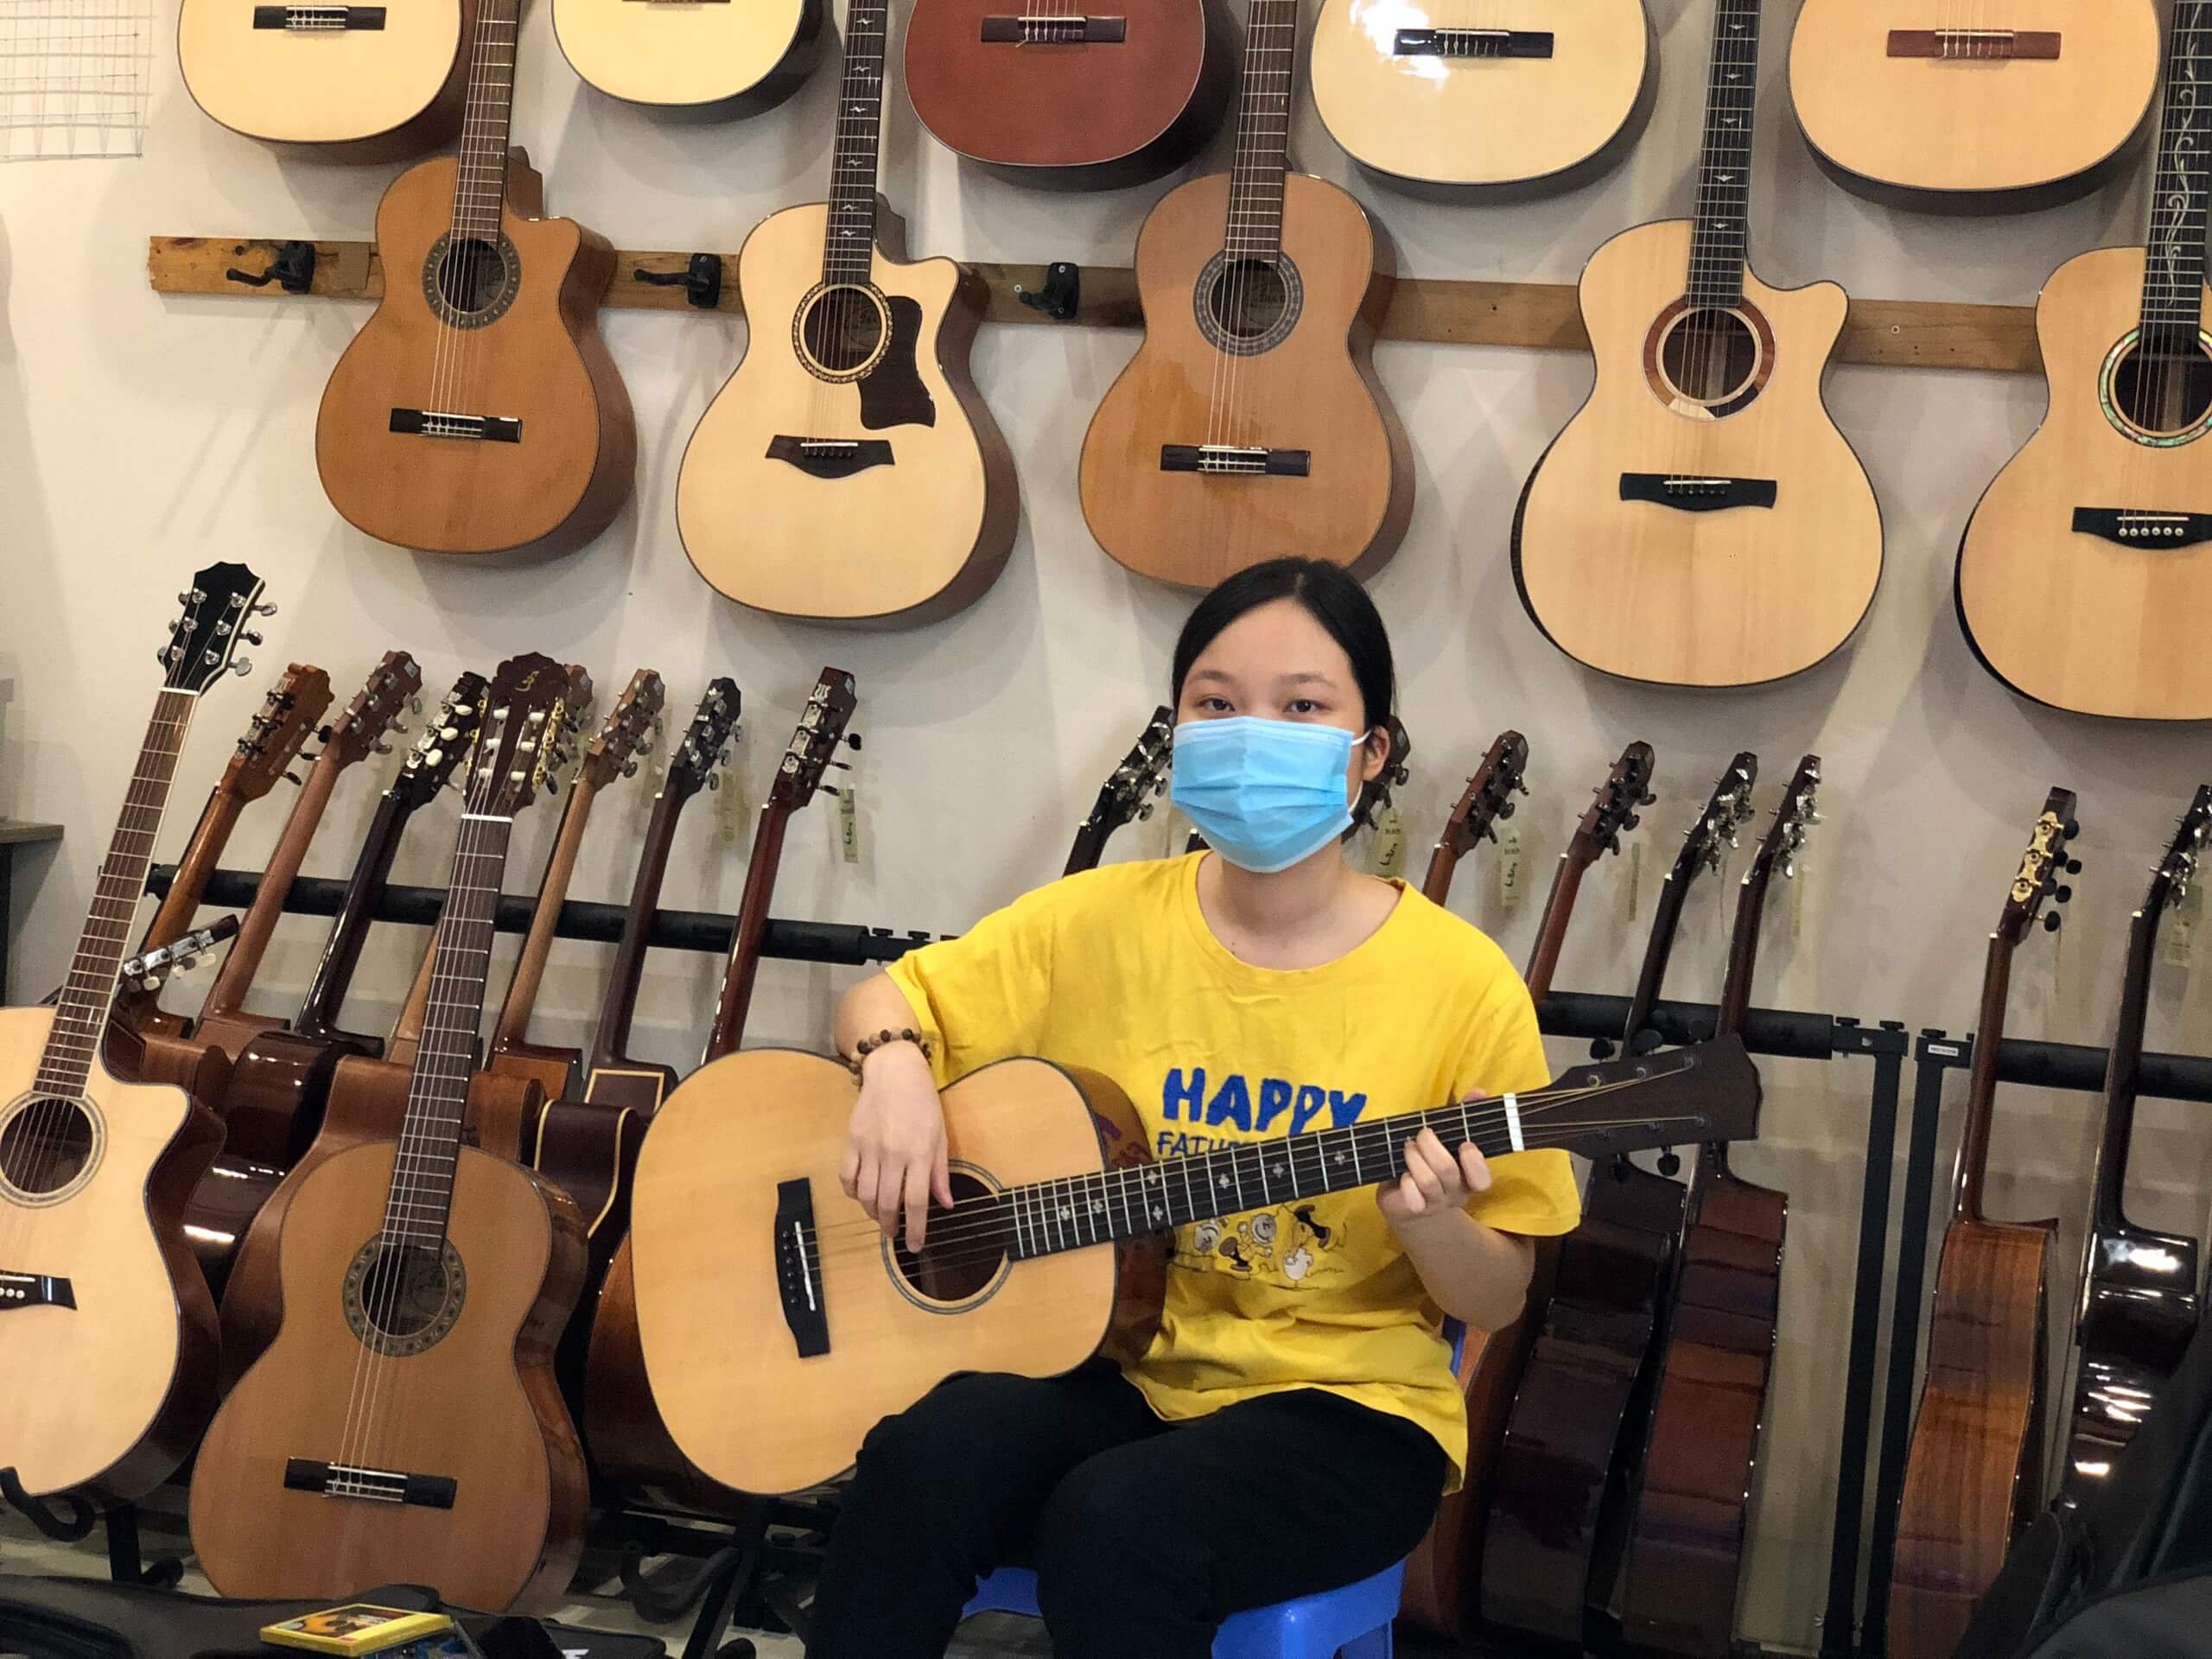 Shop Guitar Thanh Trì Hà Nội, Cửa hàng Bán Guitar, Sửa đàn Guitar Uy Tín Hà Nội